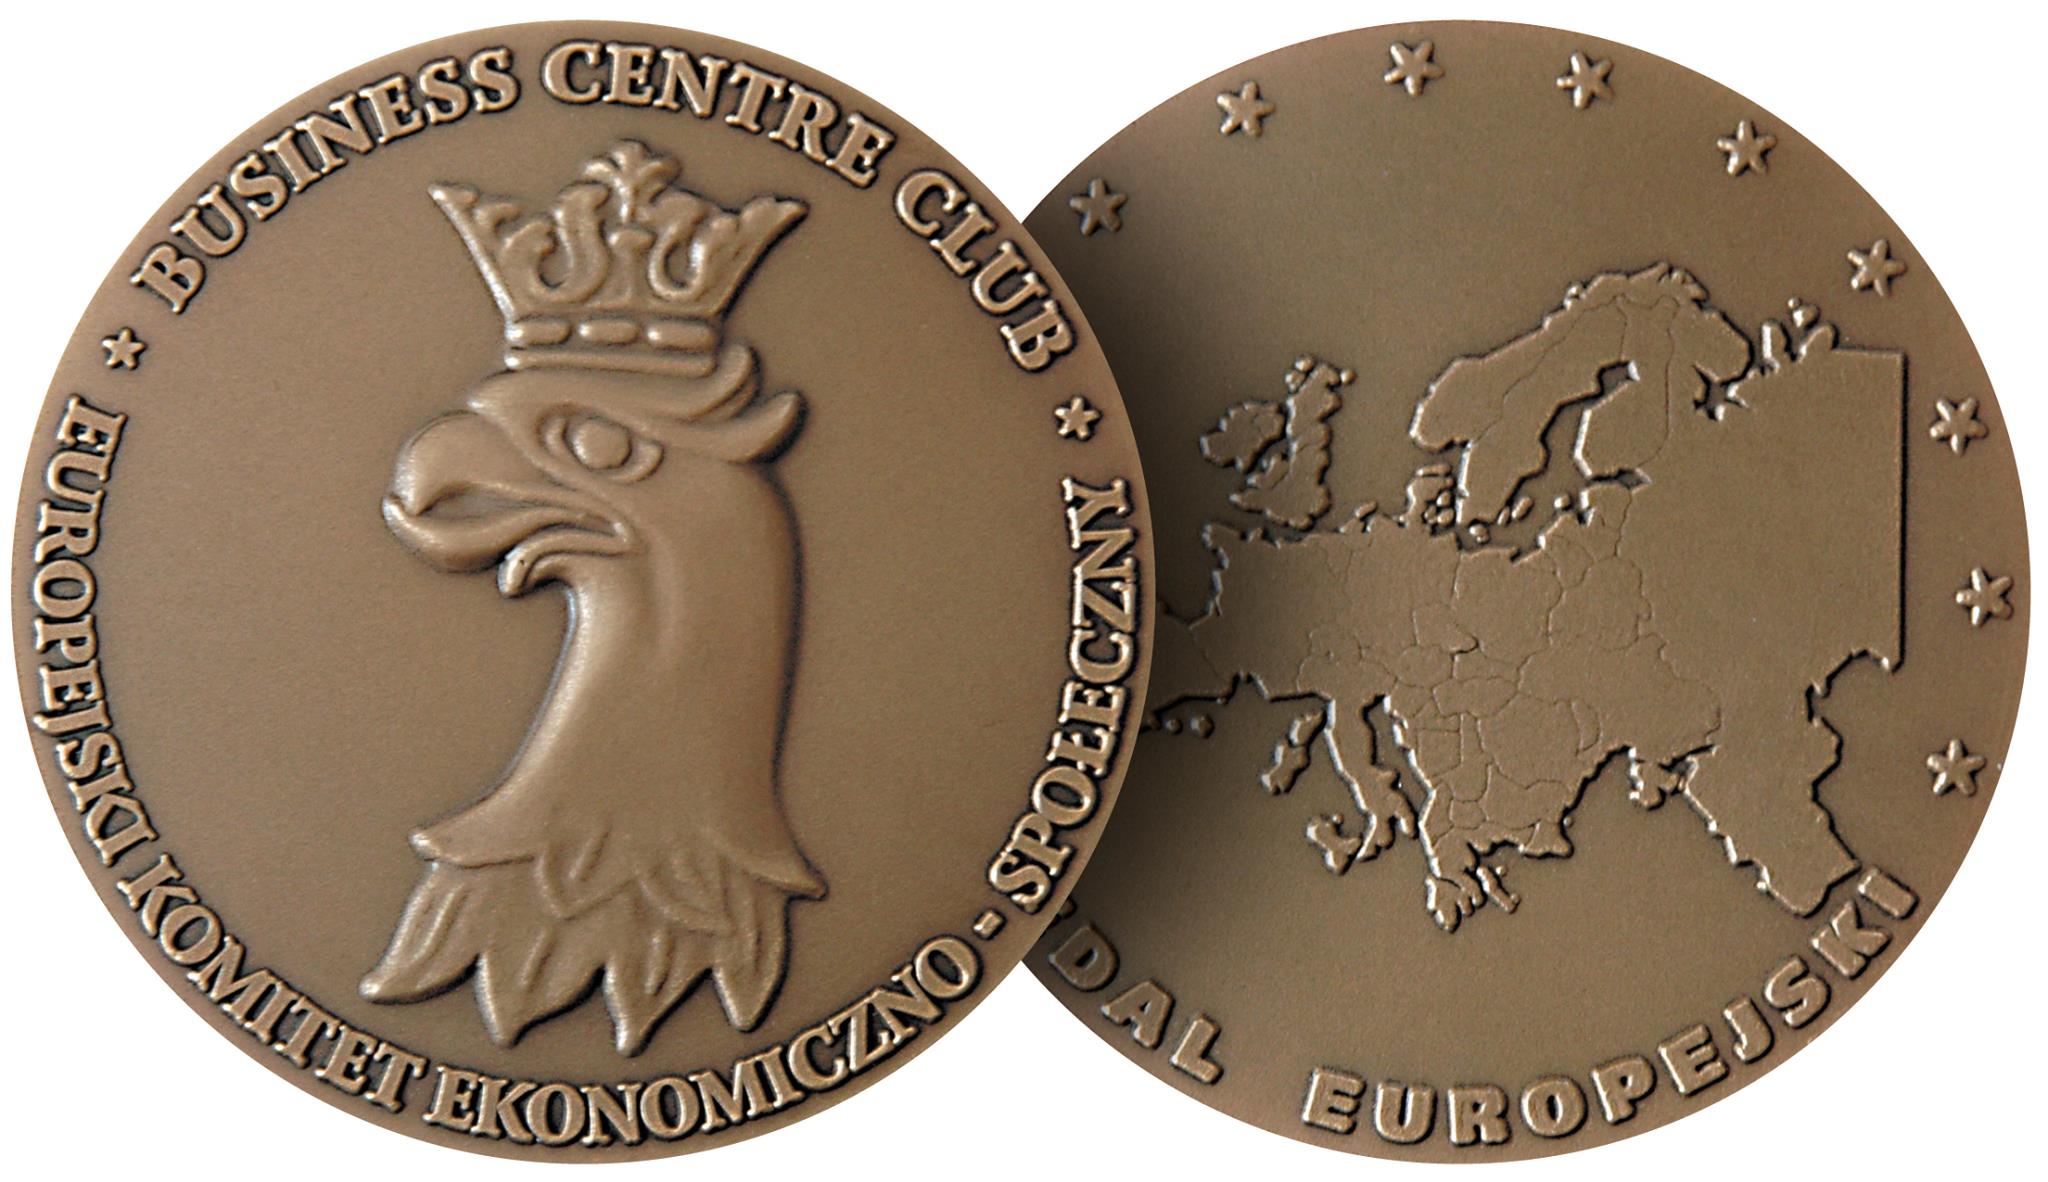 European Medal for the KOBRA TS-AF Shredders 2015